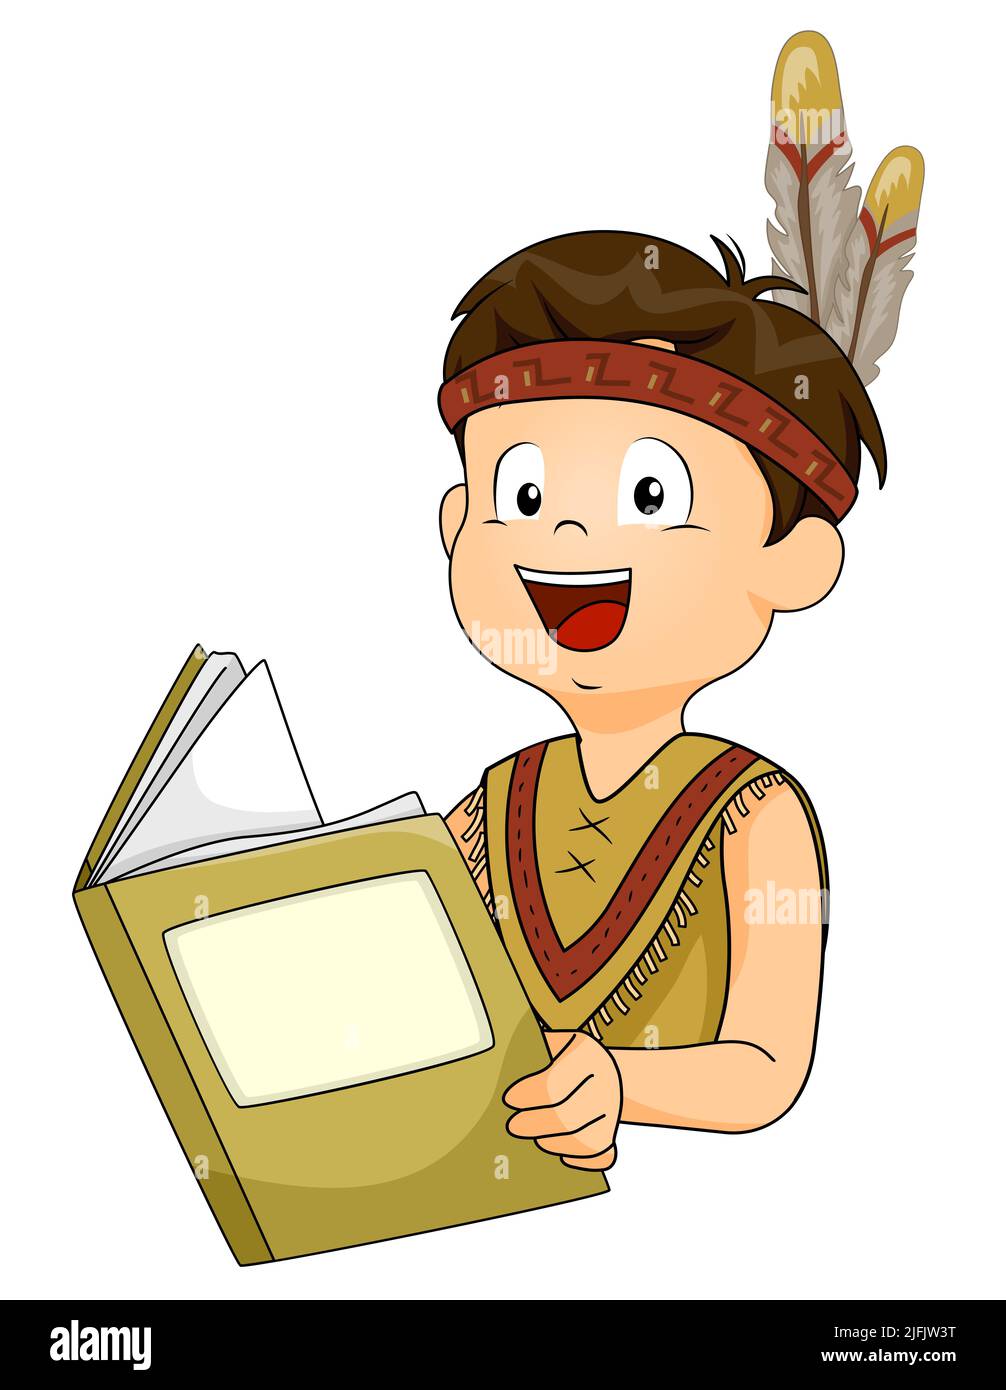 Ilustración de un estudiante indio nativo de Kid Boy usando una túnica y diadema con plumas, sosteniendo y leyendo un libro Foto de stock